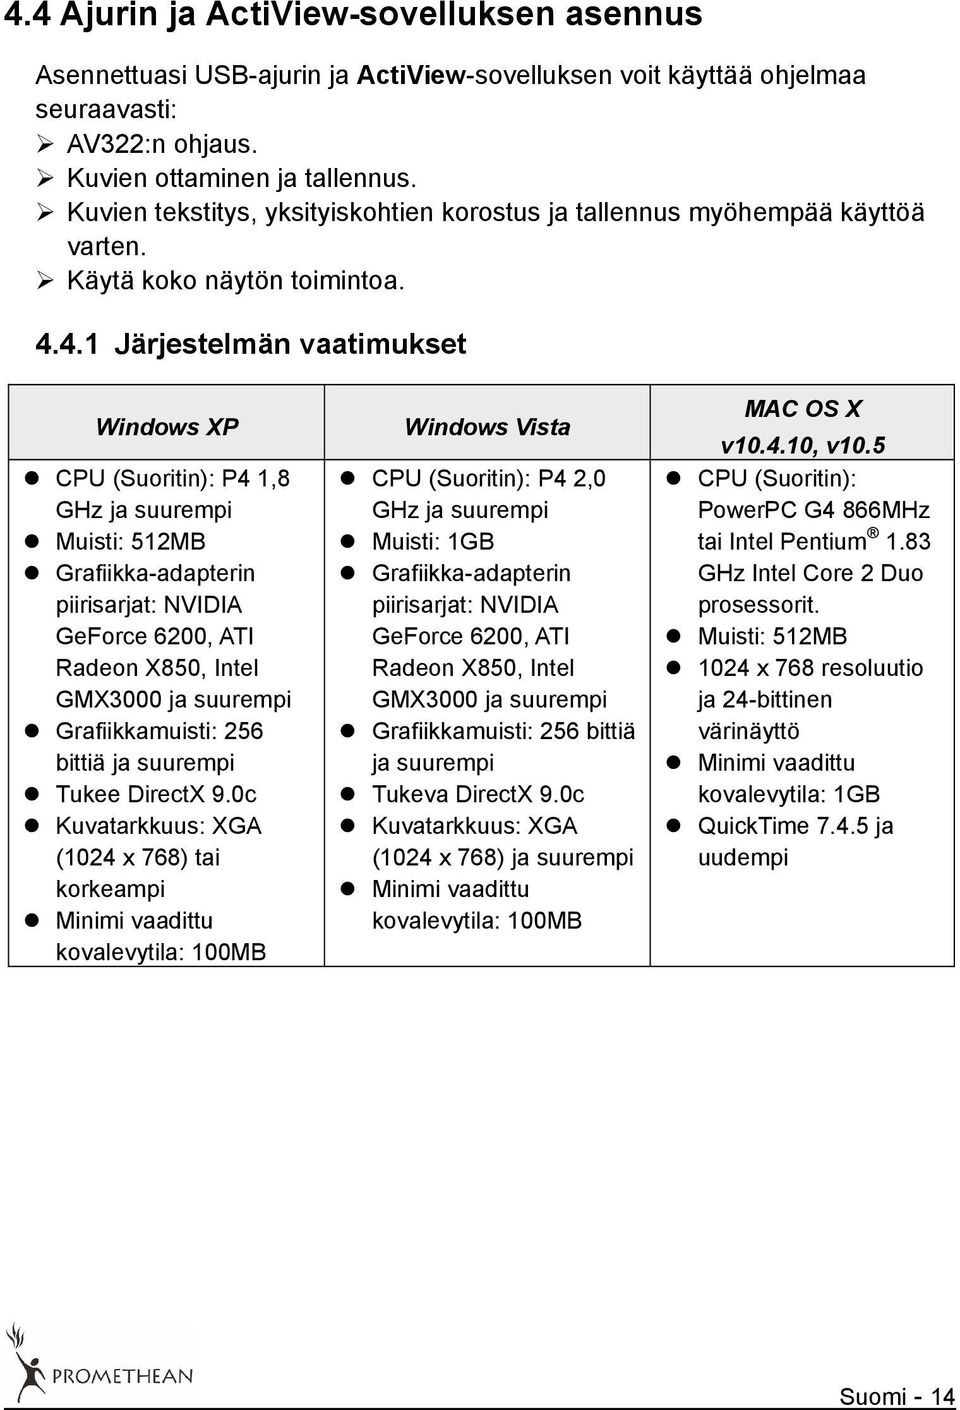 4.1 Järjestelmän vaatimukset Windows XP CPU (Suoritin): P4 1,8 GHz ja suurempi Muisti: 512MB Grafiikka-adapterin piirisarjat: NVIDIA GeForce 6200, ATI Radeon X850, Intel GMX3000 ja suurempi